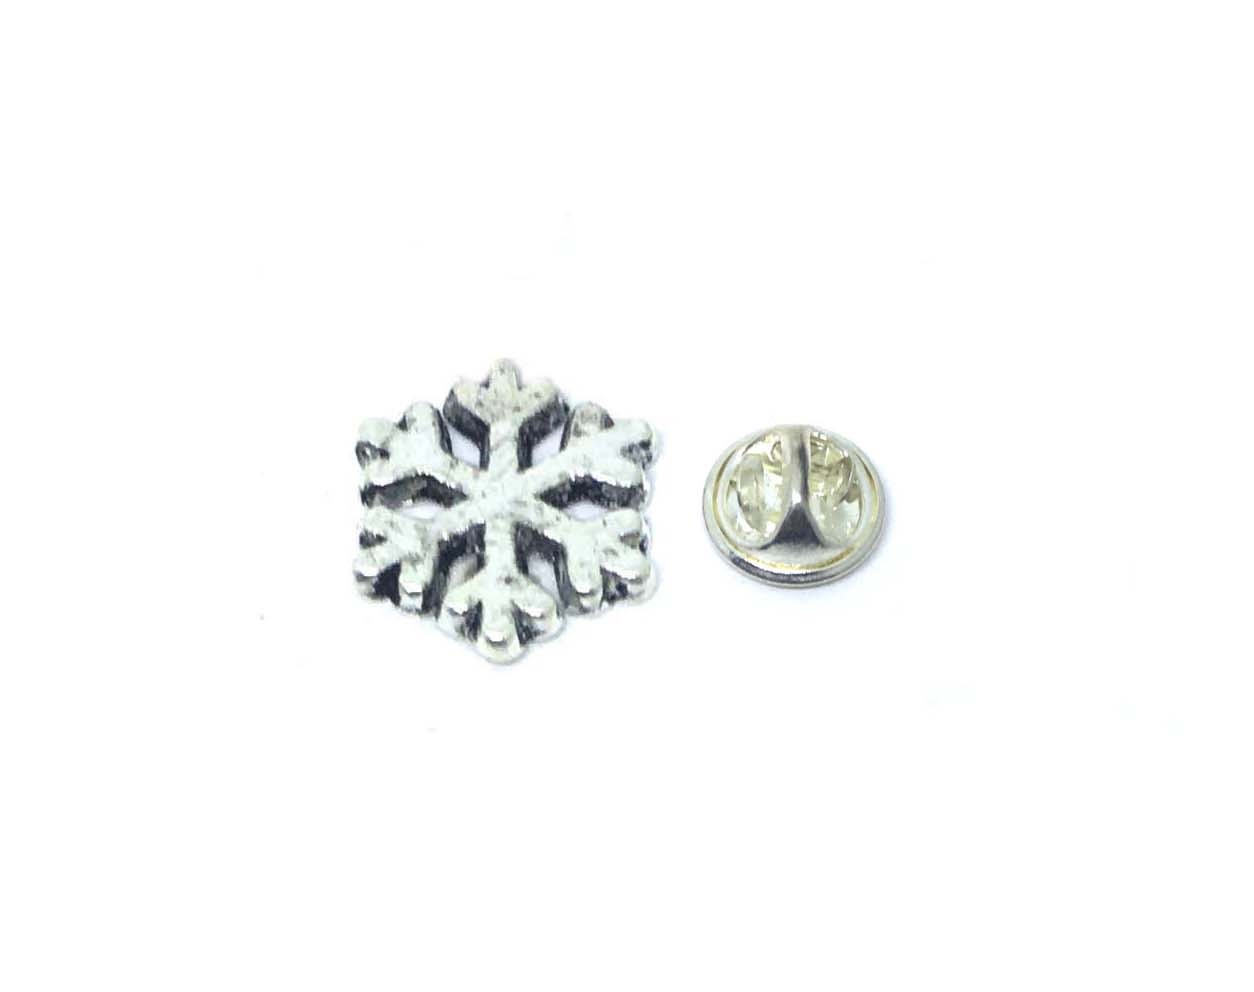 Small Snowflake Pin